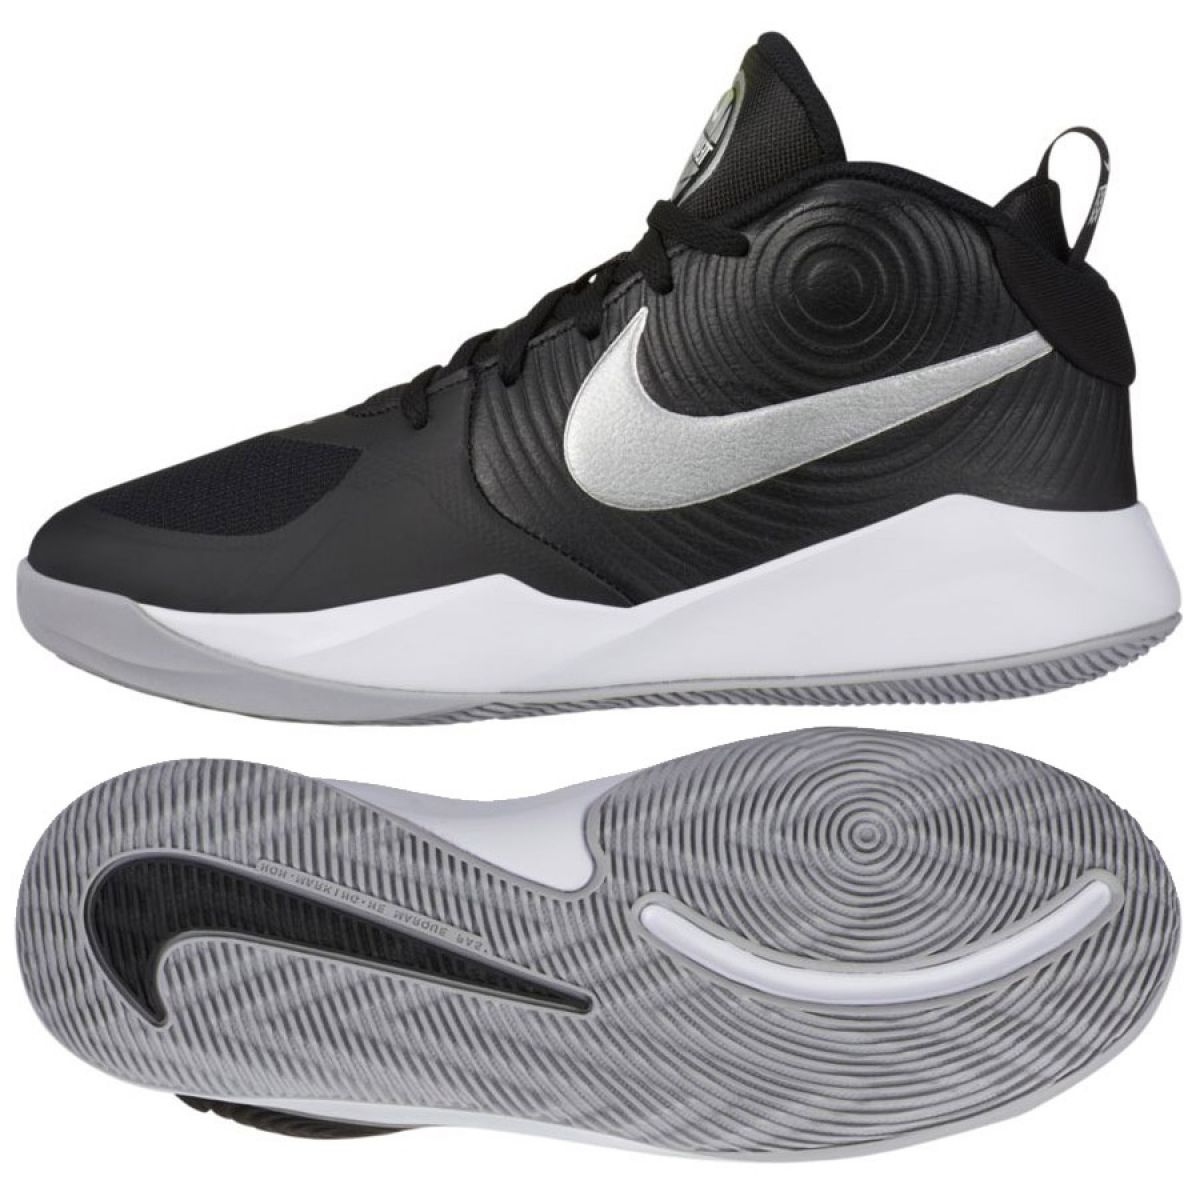 Buty do koszykówki Nike Team Hustle D 9 (GS) Jr AQ4224 001 biały, biały, czarny czarne